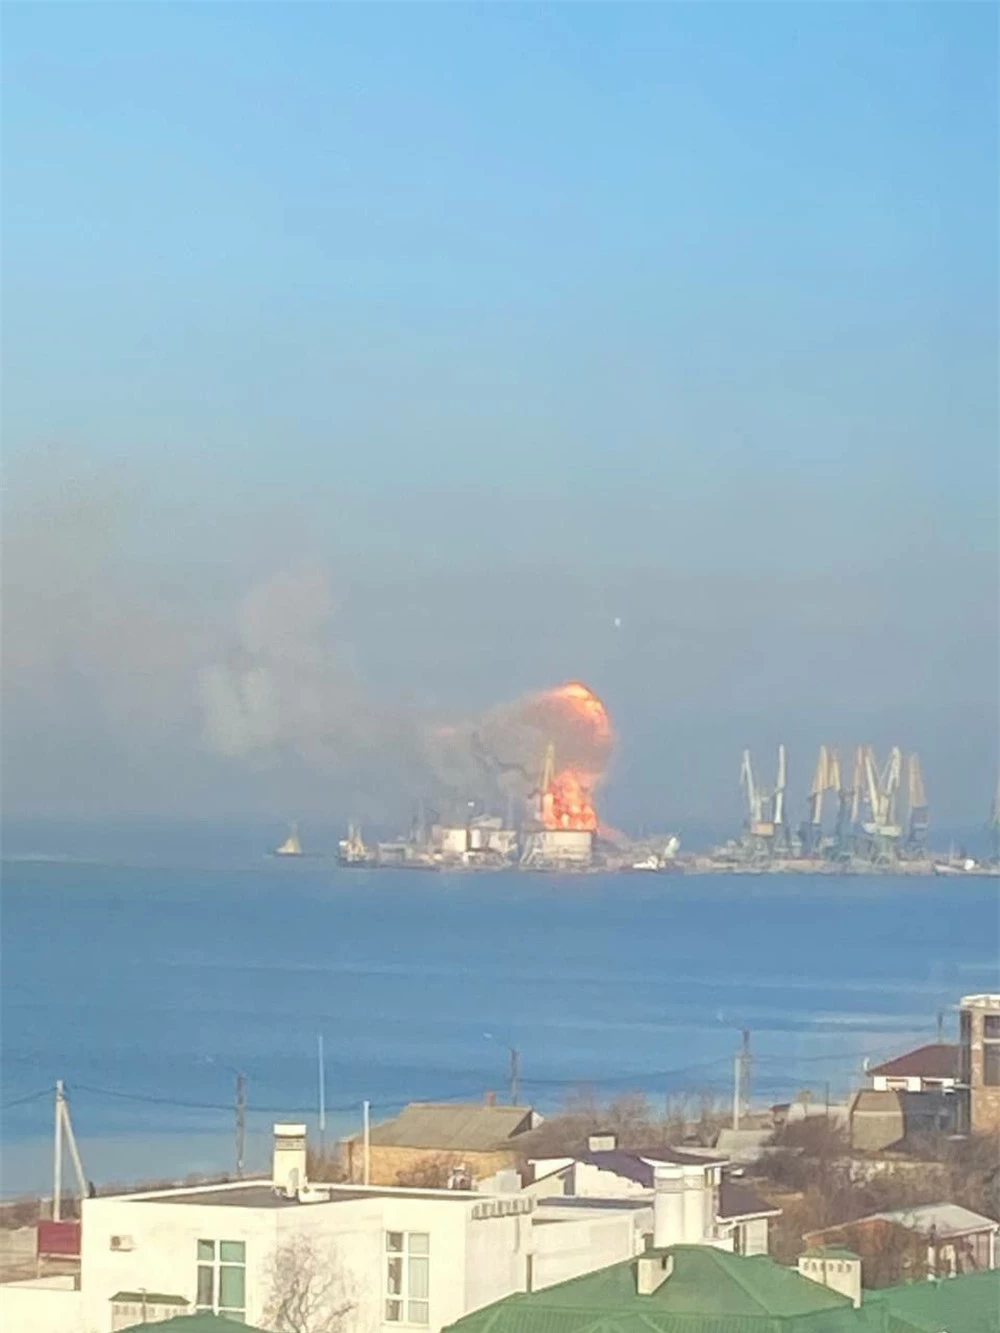 NÓNG: Nổ lớn ở cảng Berdyansk, lửa cháy dữ dội - Ukraine tuyên bố tàu chiến Nga bị phá hủy - Ảnh 1.